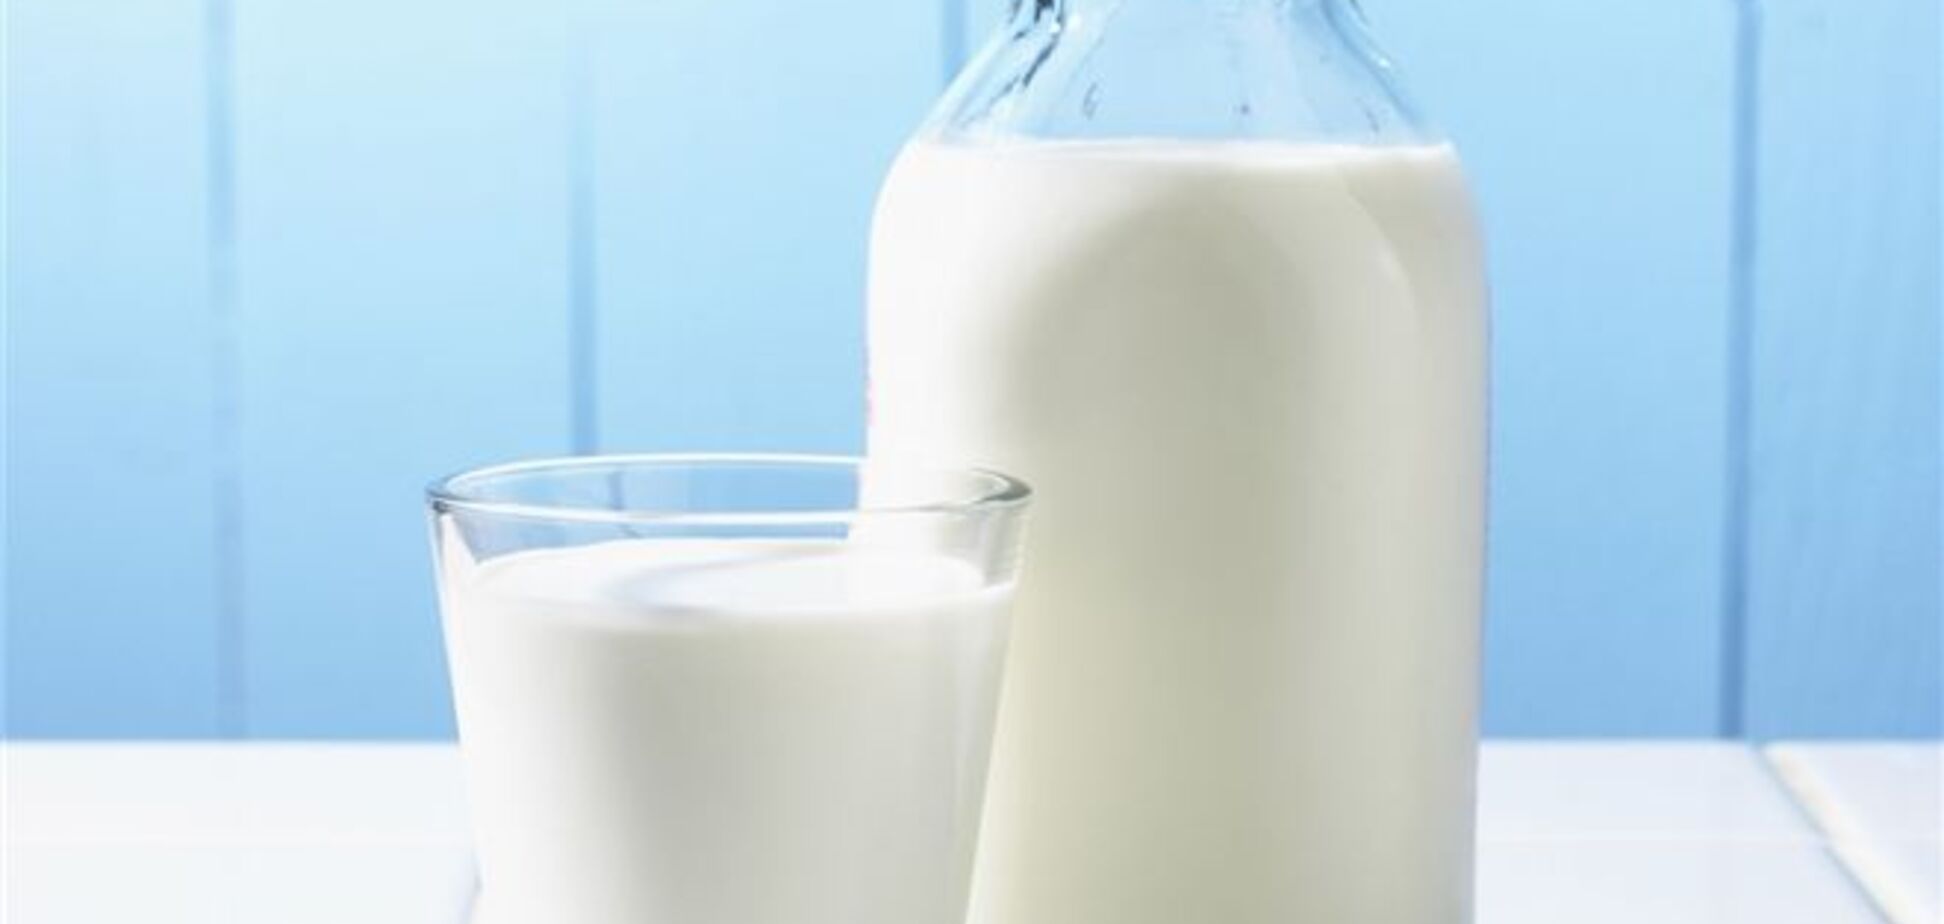 Крупнейший молокозавод Украины стал банкротом